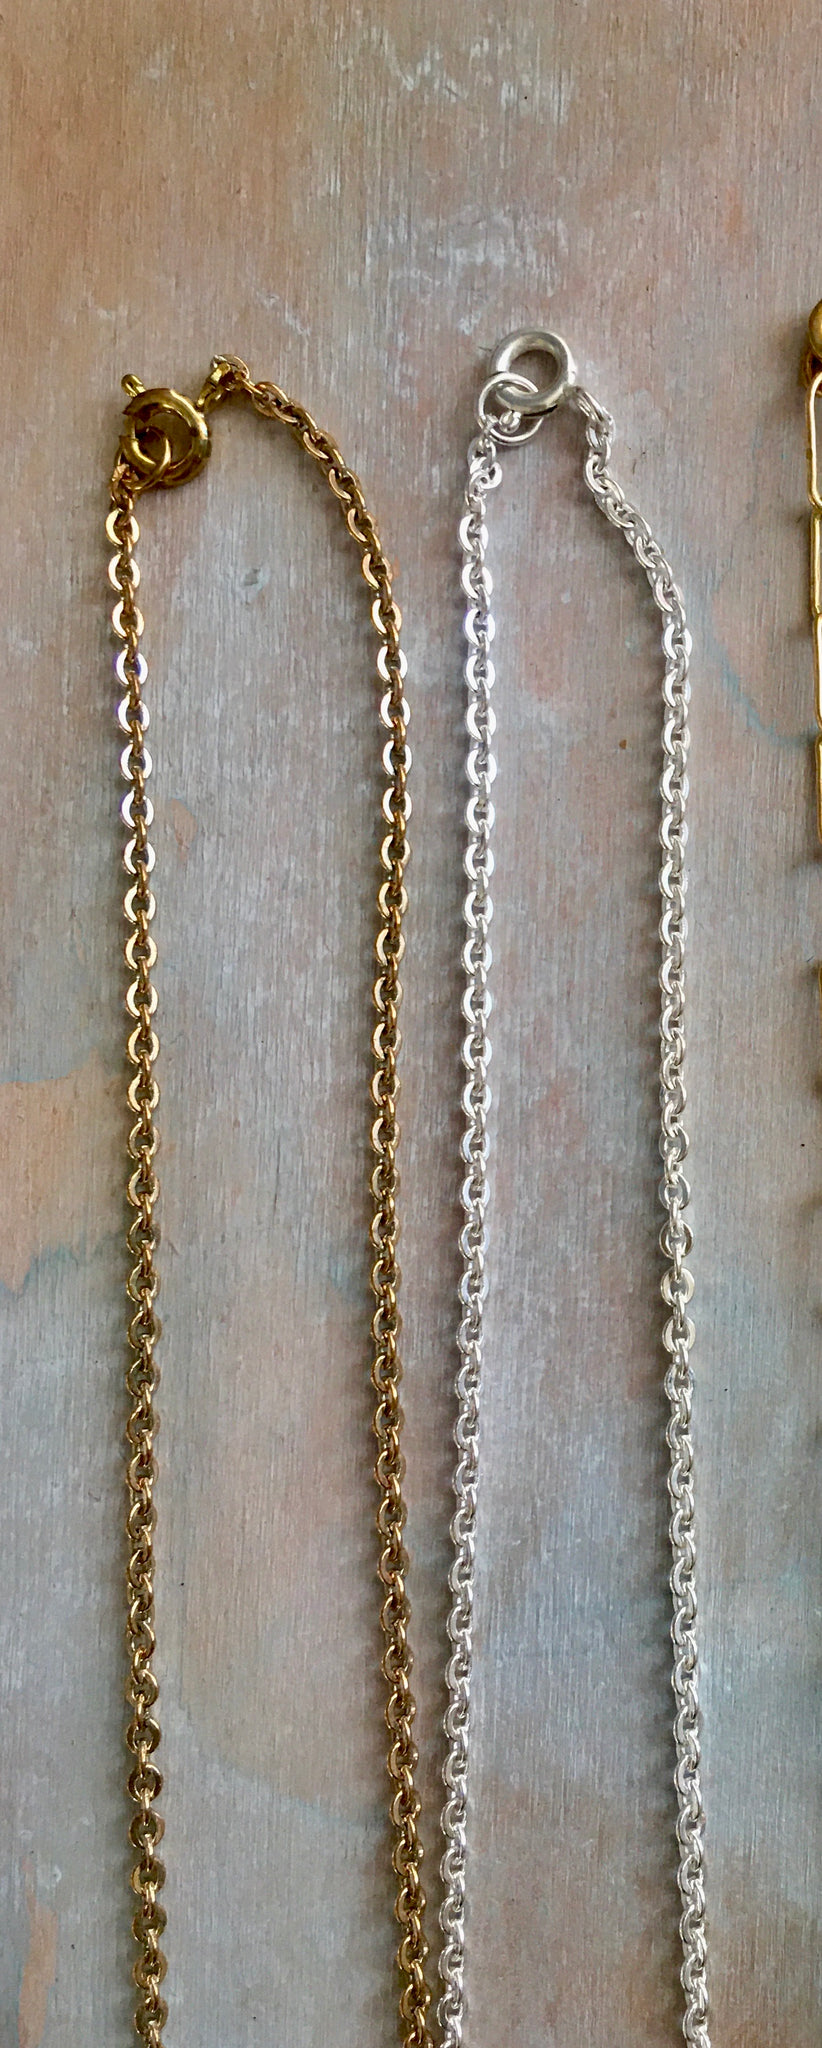 20” brass chains